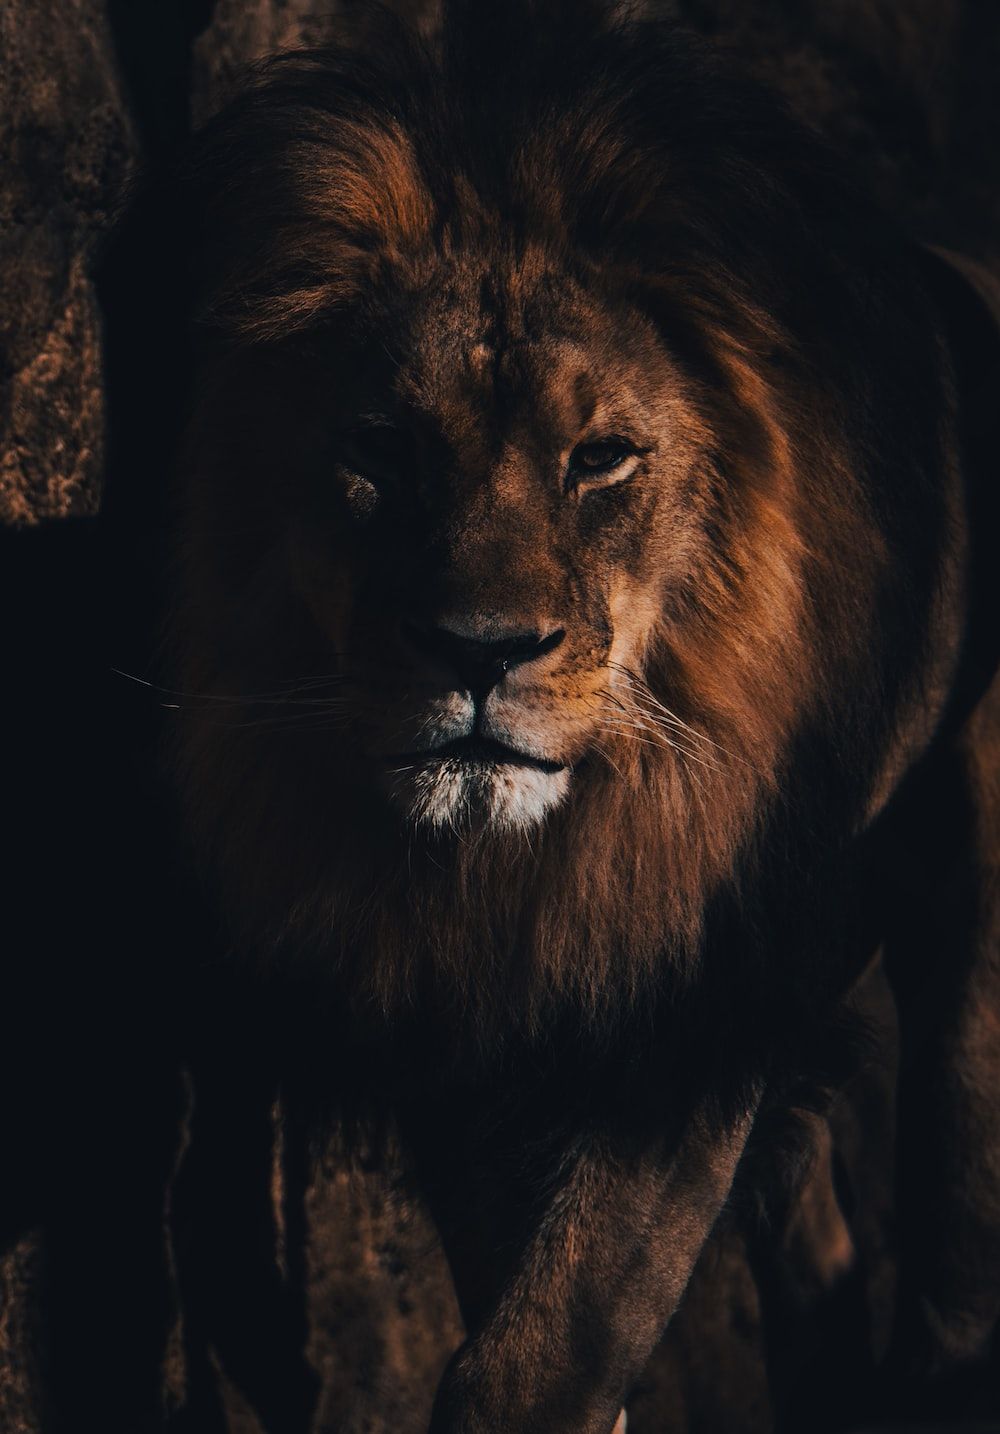  Löwen Hintergrundbild 1000x1434. Löwenbilder & Bilder. Laden Sie kostenlose Bilder und Stockfotos auf herunter